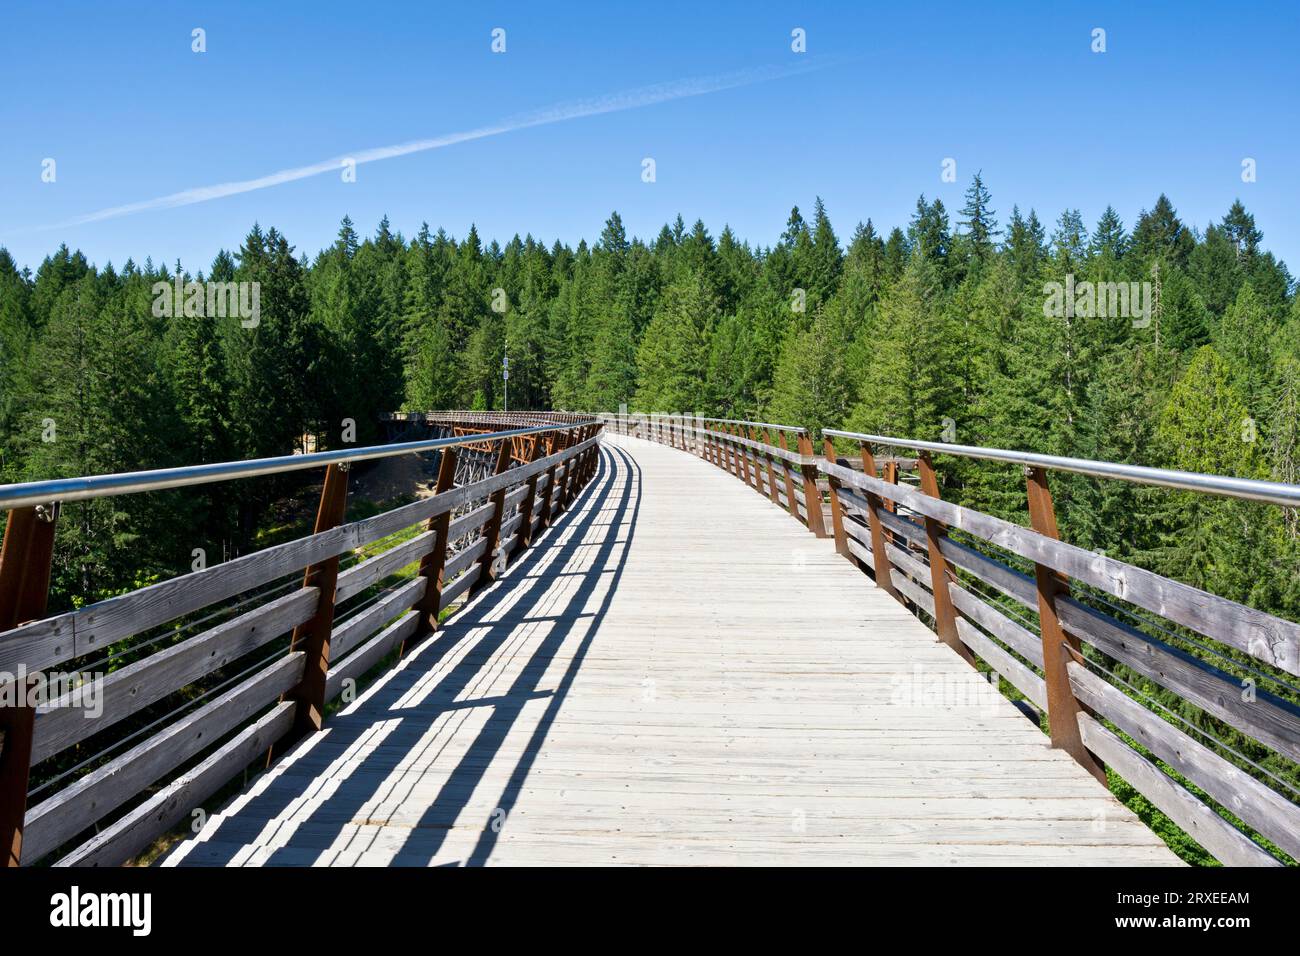 Passerelle du Kinsol Trestle sur l'île de Vancouver, Colombie-Britannique, Canada. Fantastique sentier pittoresque de marche et de vélo sur un pont ferroviaire converti. Banque D'Images